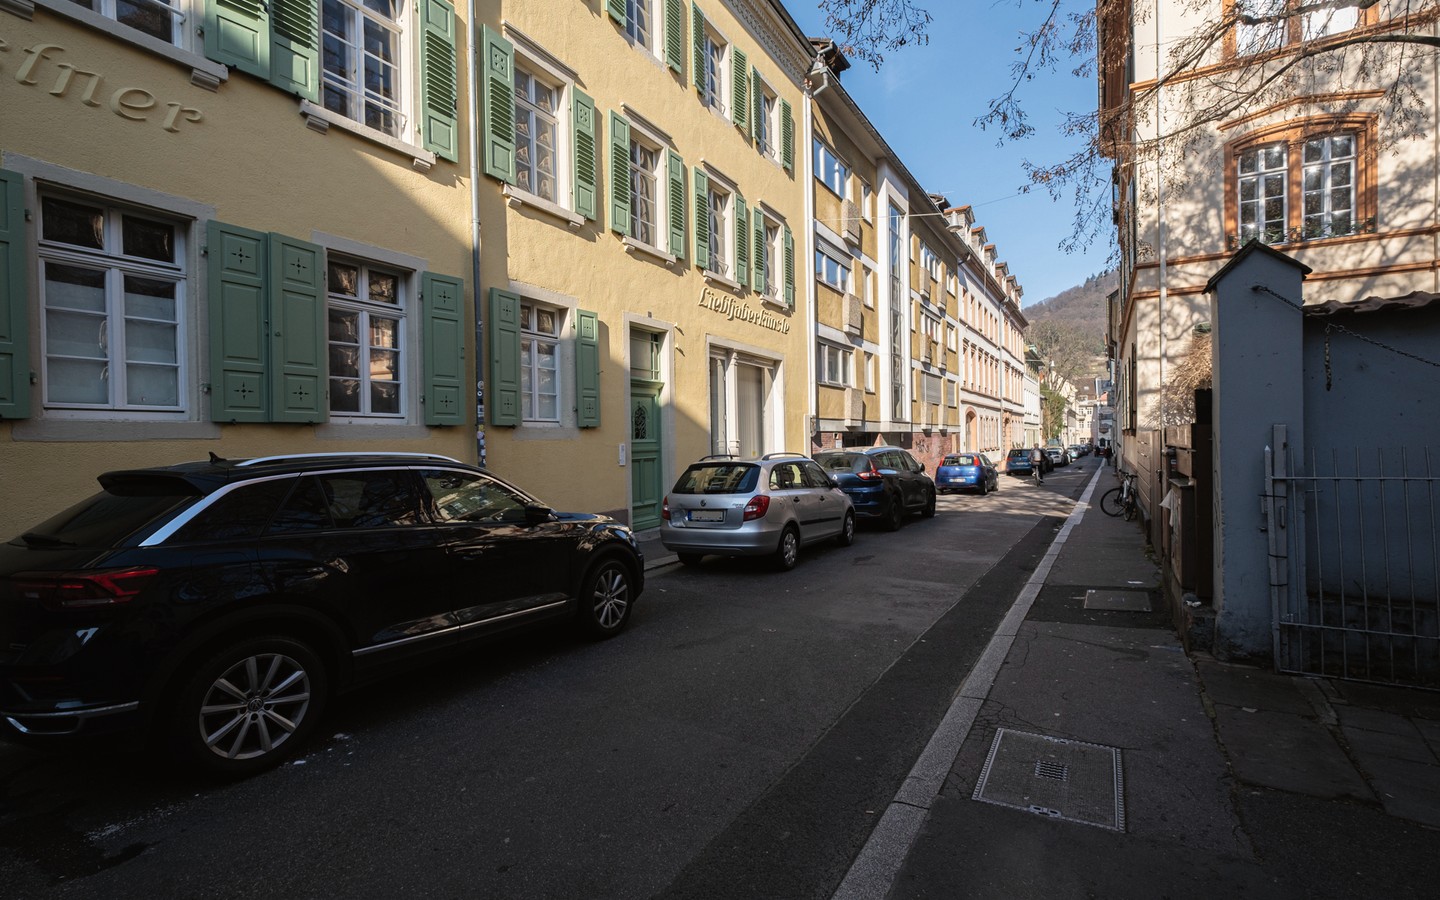 Straßenzug - Bezugsfreie Einzimmerwohnung mit TG-Stellplatz in absolut zentraler Lage der Heidelberger Altstadt